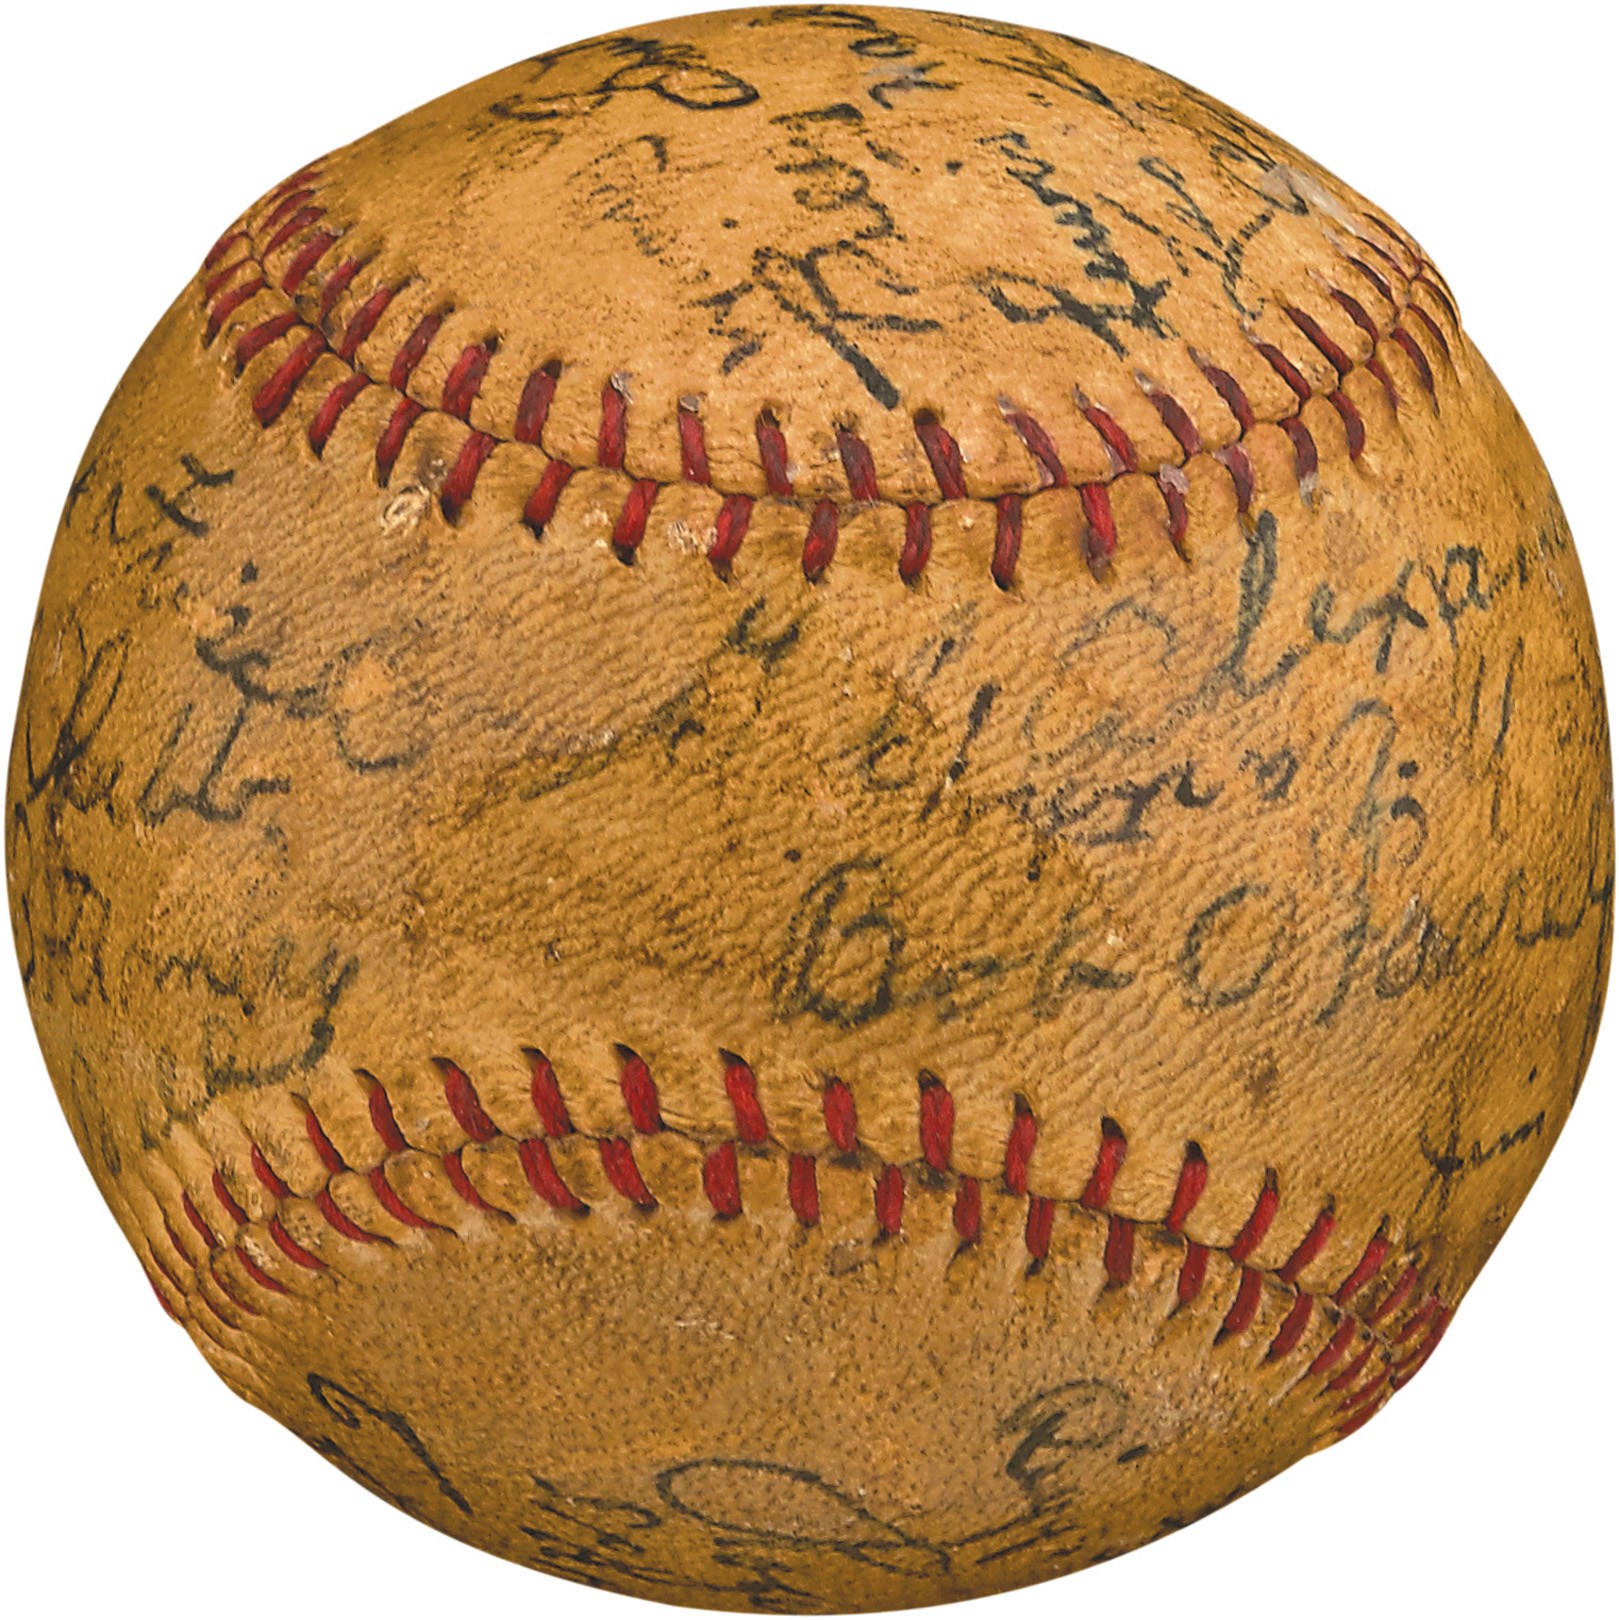 Baseball Autographs - 1927 Cardinals & Cubs Team-Signed Baseball w/G.C Alexander & Hack Wilson